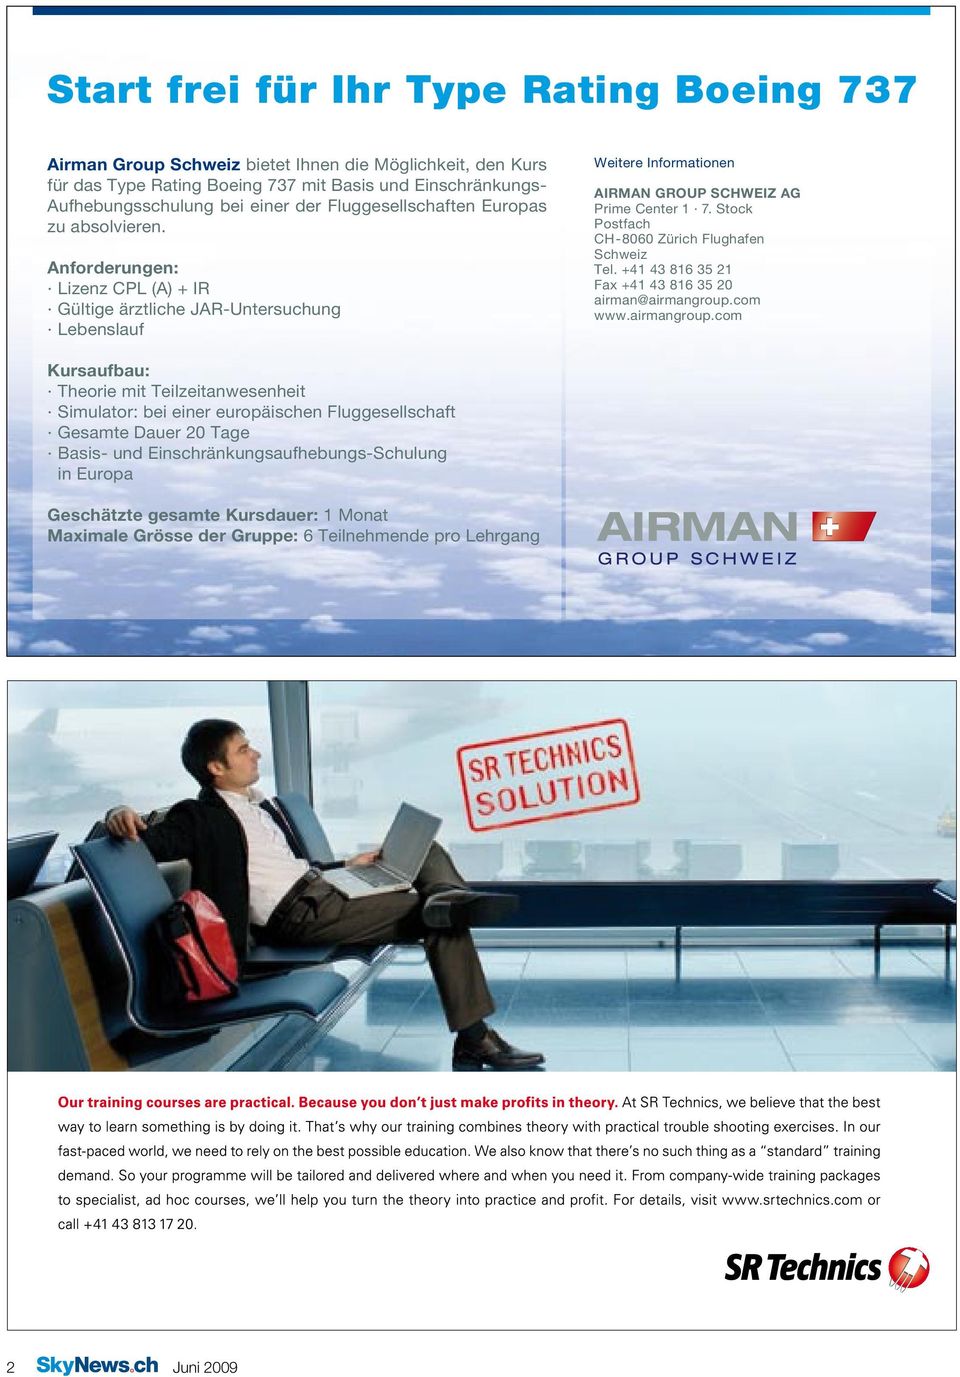 Stock Postfach CH-8060 Zürich Flughafen Schweiz Tel. +41 43 816 35 21 Fax +41 43 816 35 20 airman@airmangroup.